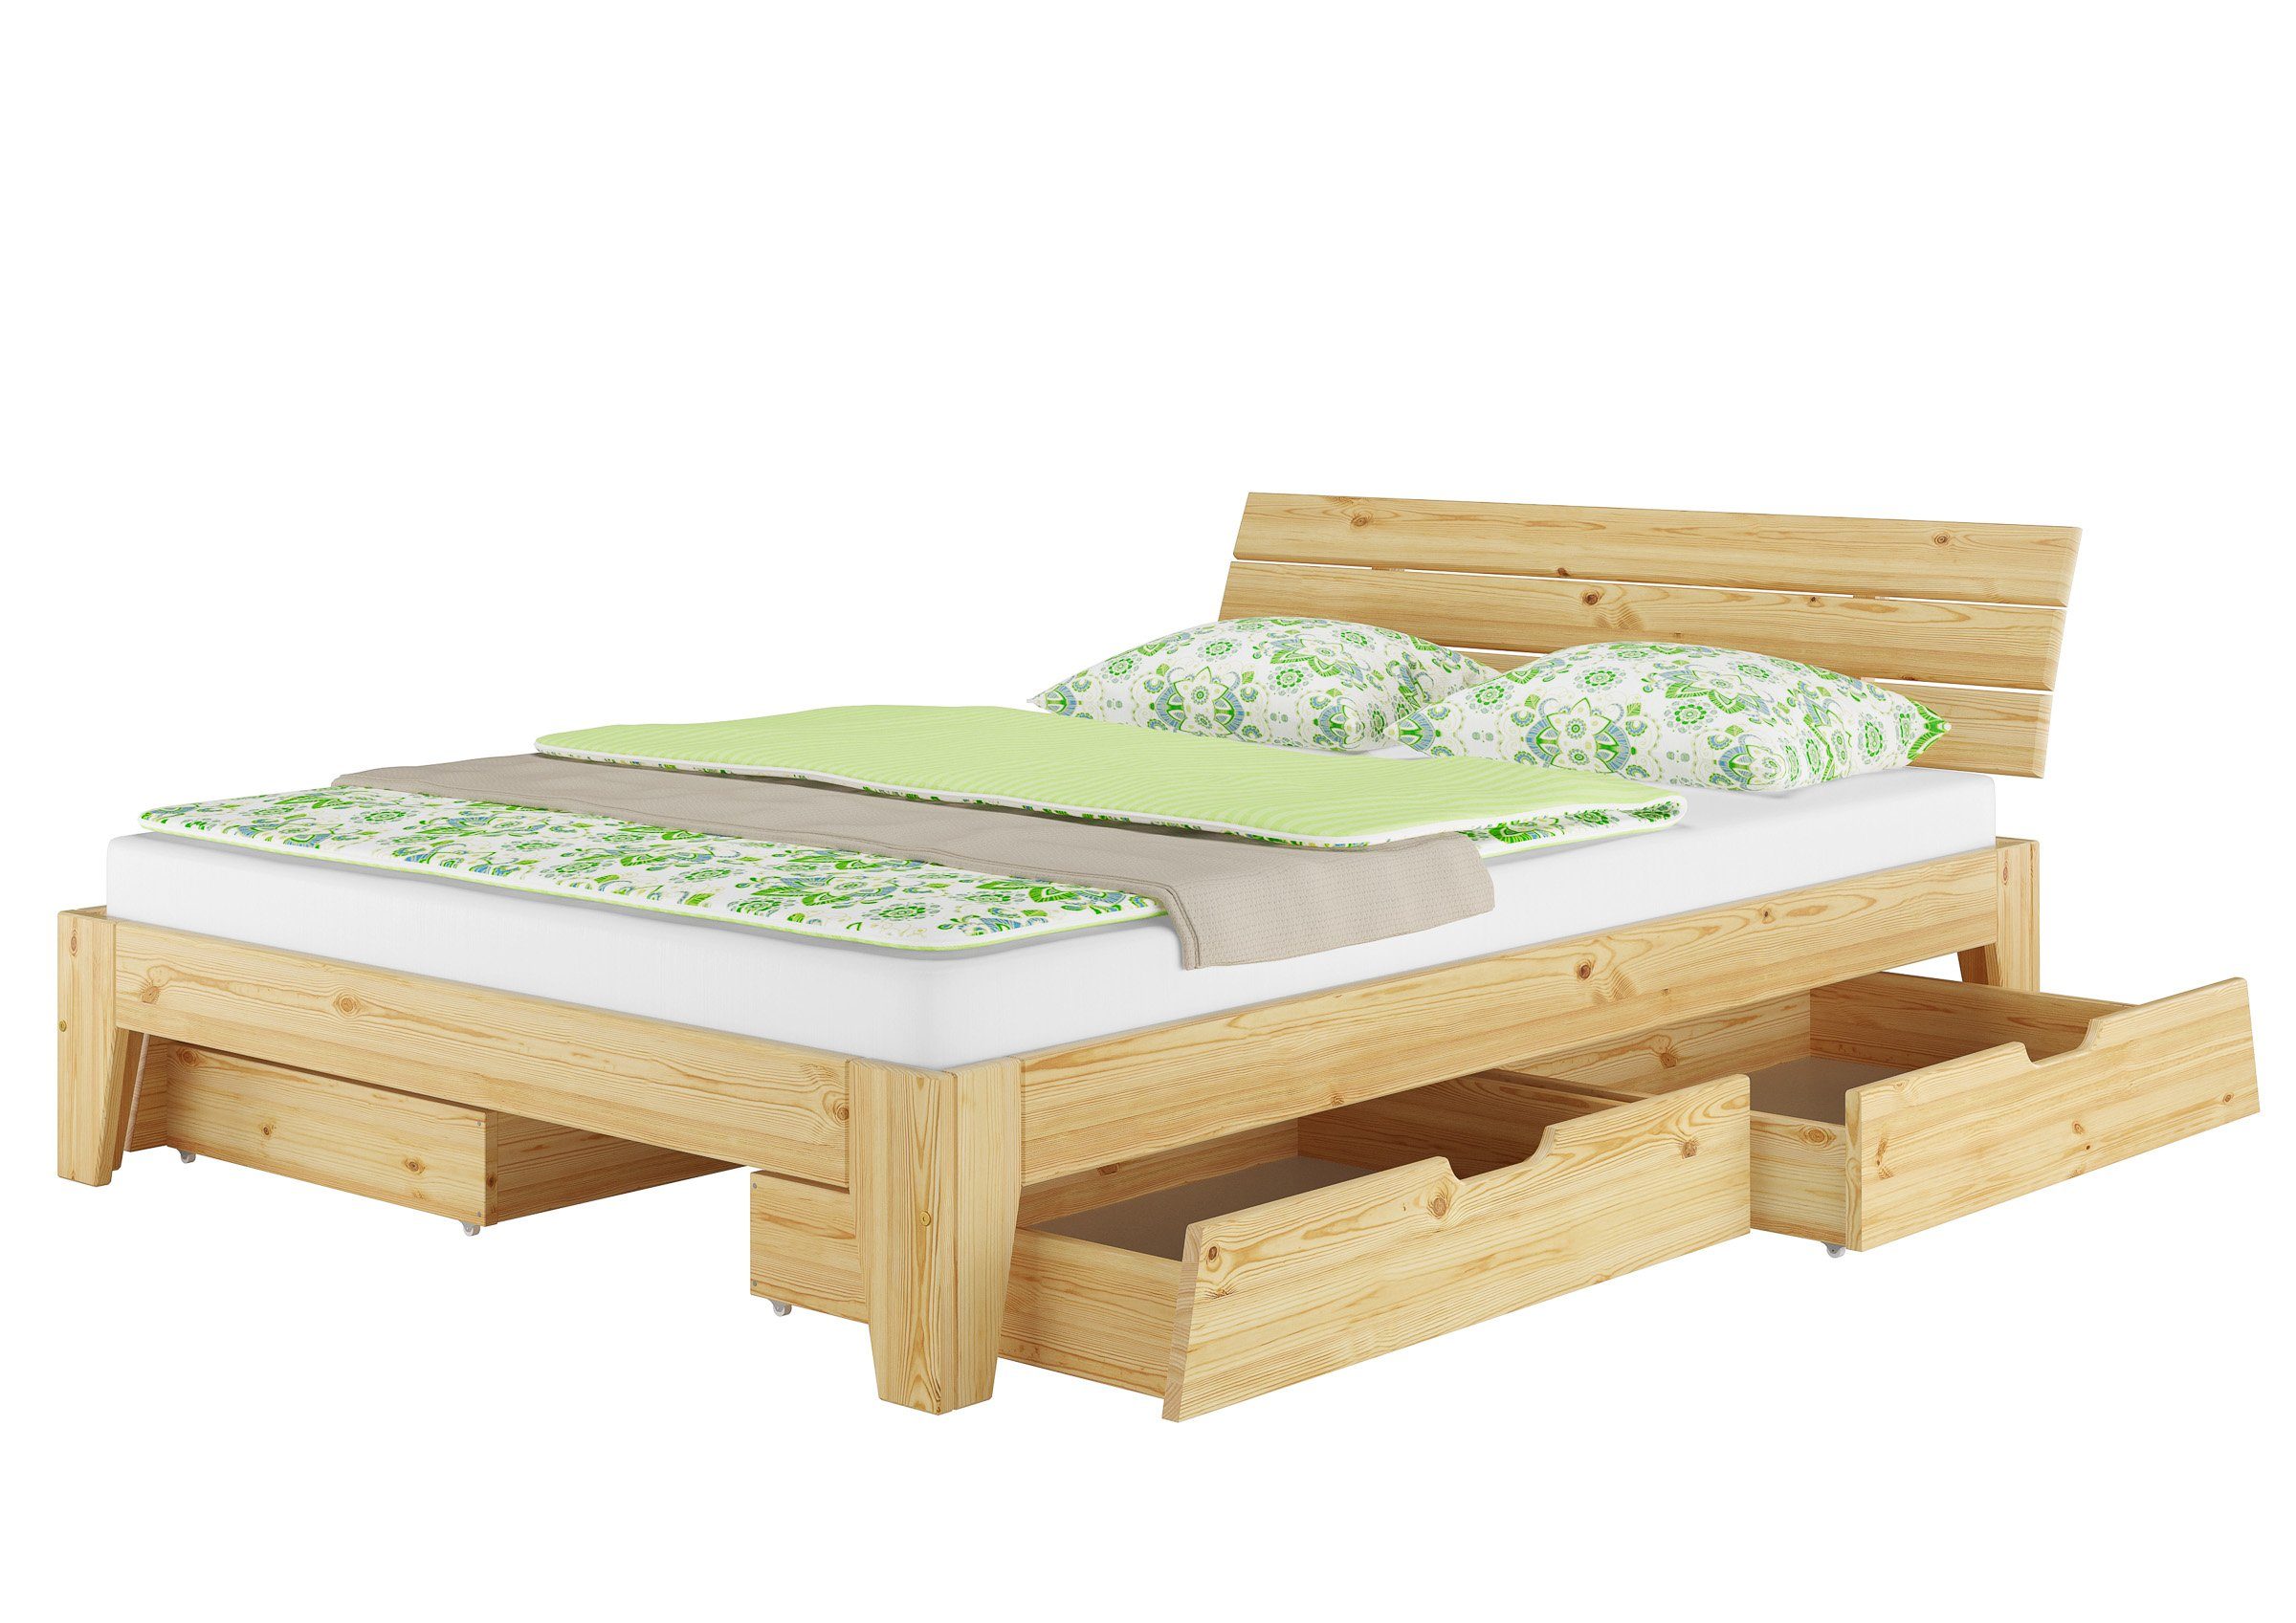 ERST-HOLZ massiv wählbar, Echtholzbett Kieferfarblos Kiefer Zubehör natur lackiert Bett Doppelbett